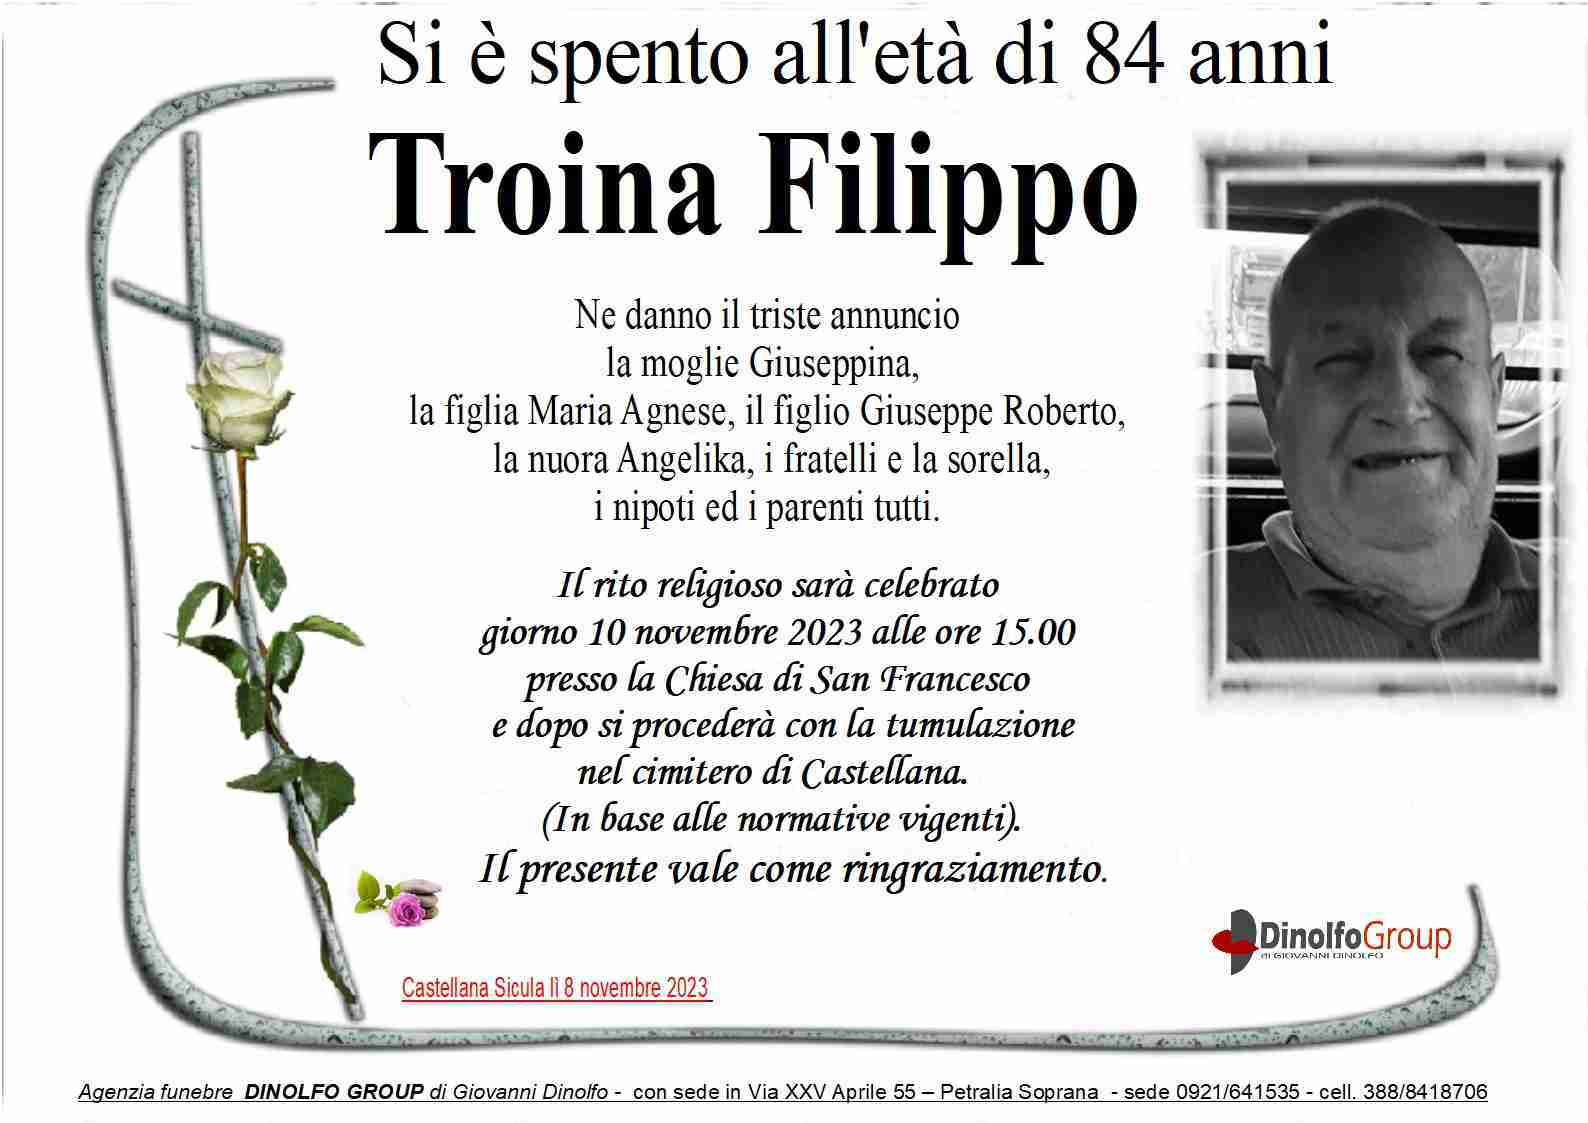 Filippo Troina